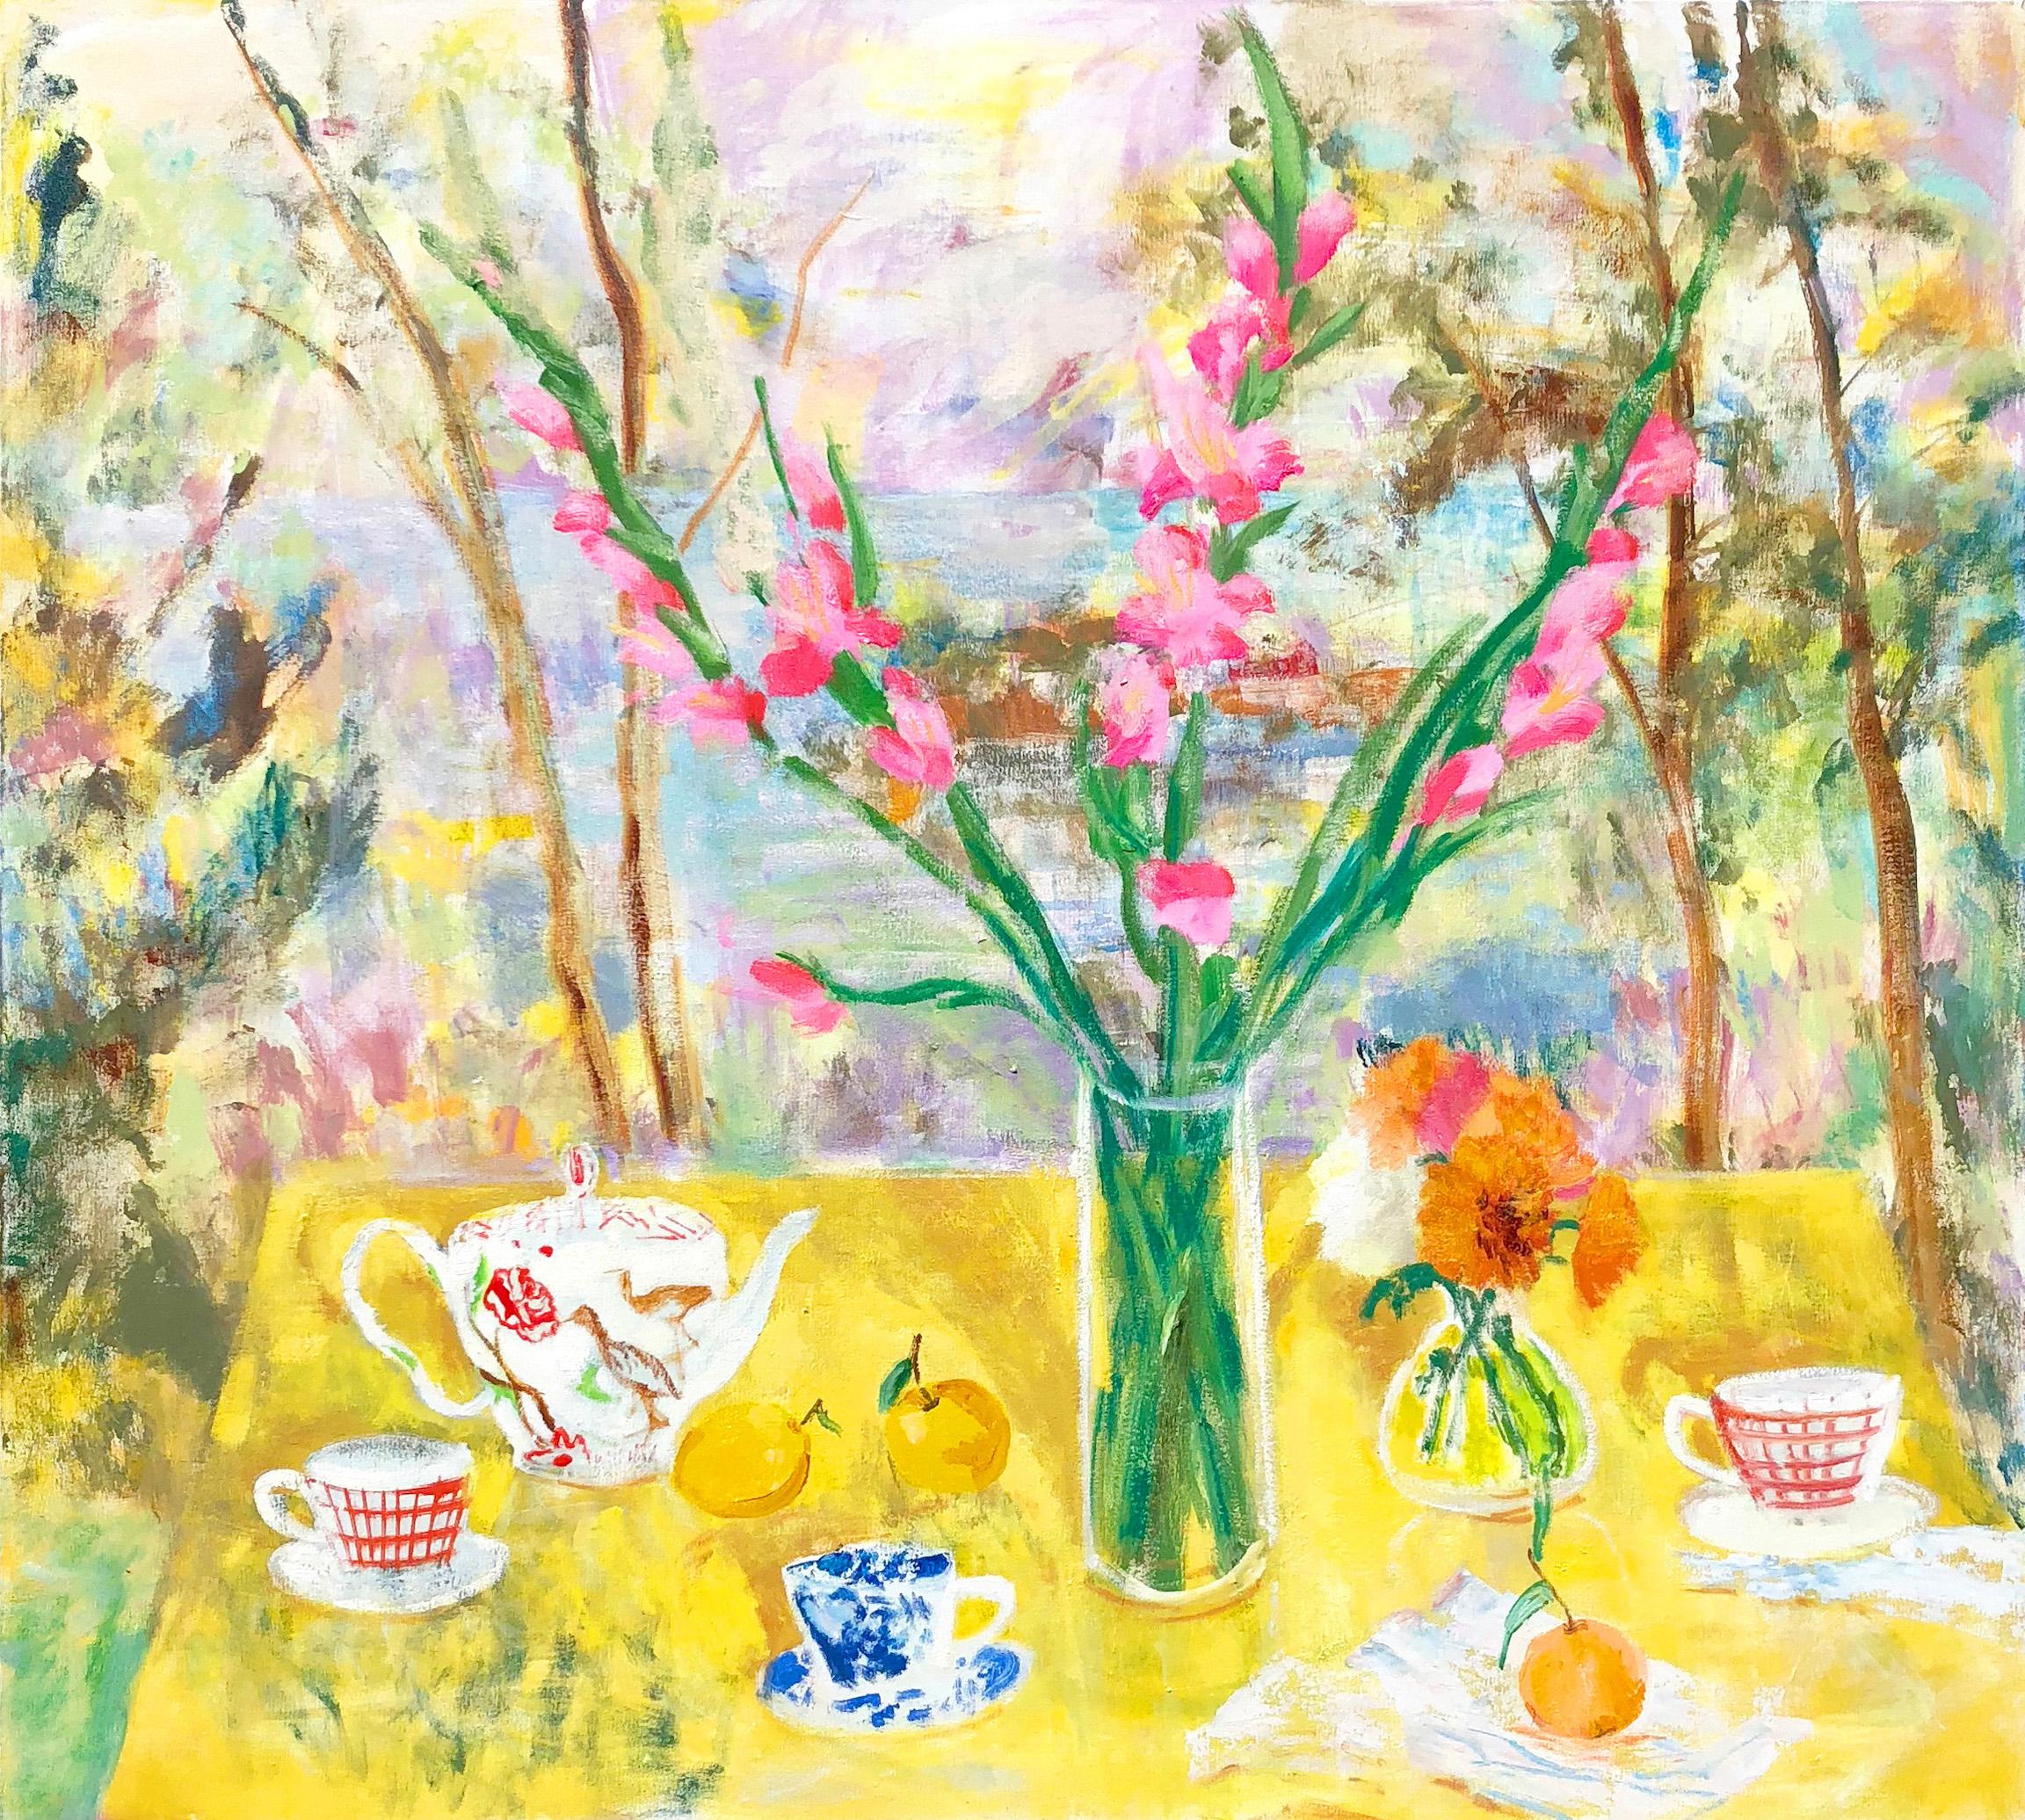 Still-Life Painting Melanie Parke - The Philosophy of Tea, Teacups, Yellow, Pink Gladiolus Flowers, Green Forest (La philosophie du thé, tasses à thé, jaune, fleurs de glaïeul roses, forêt verte)